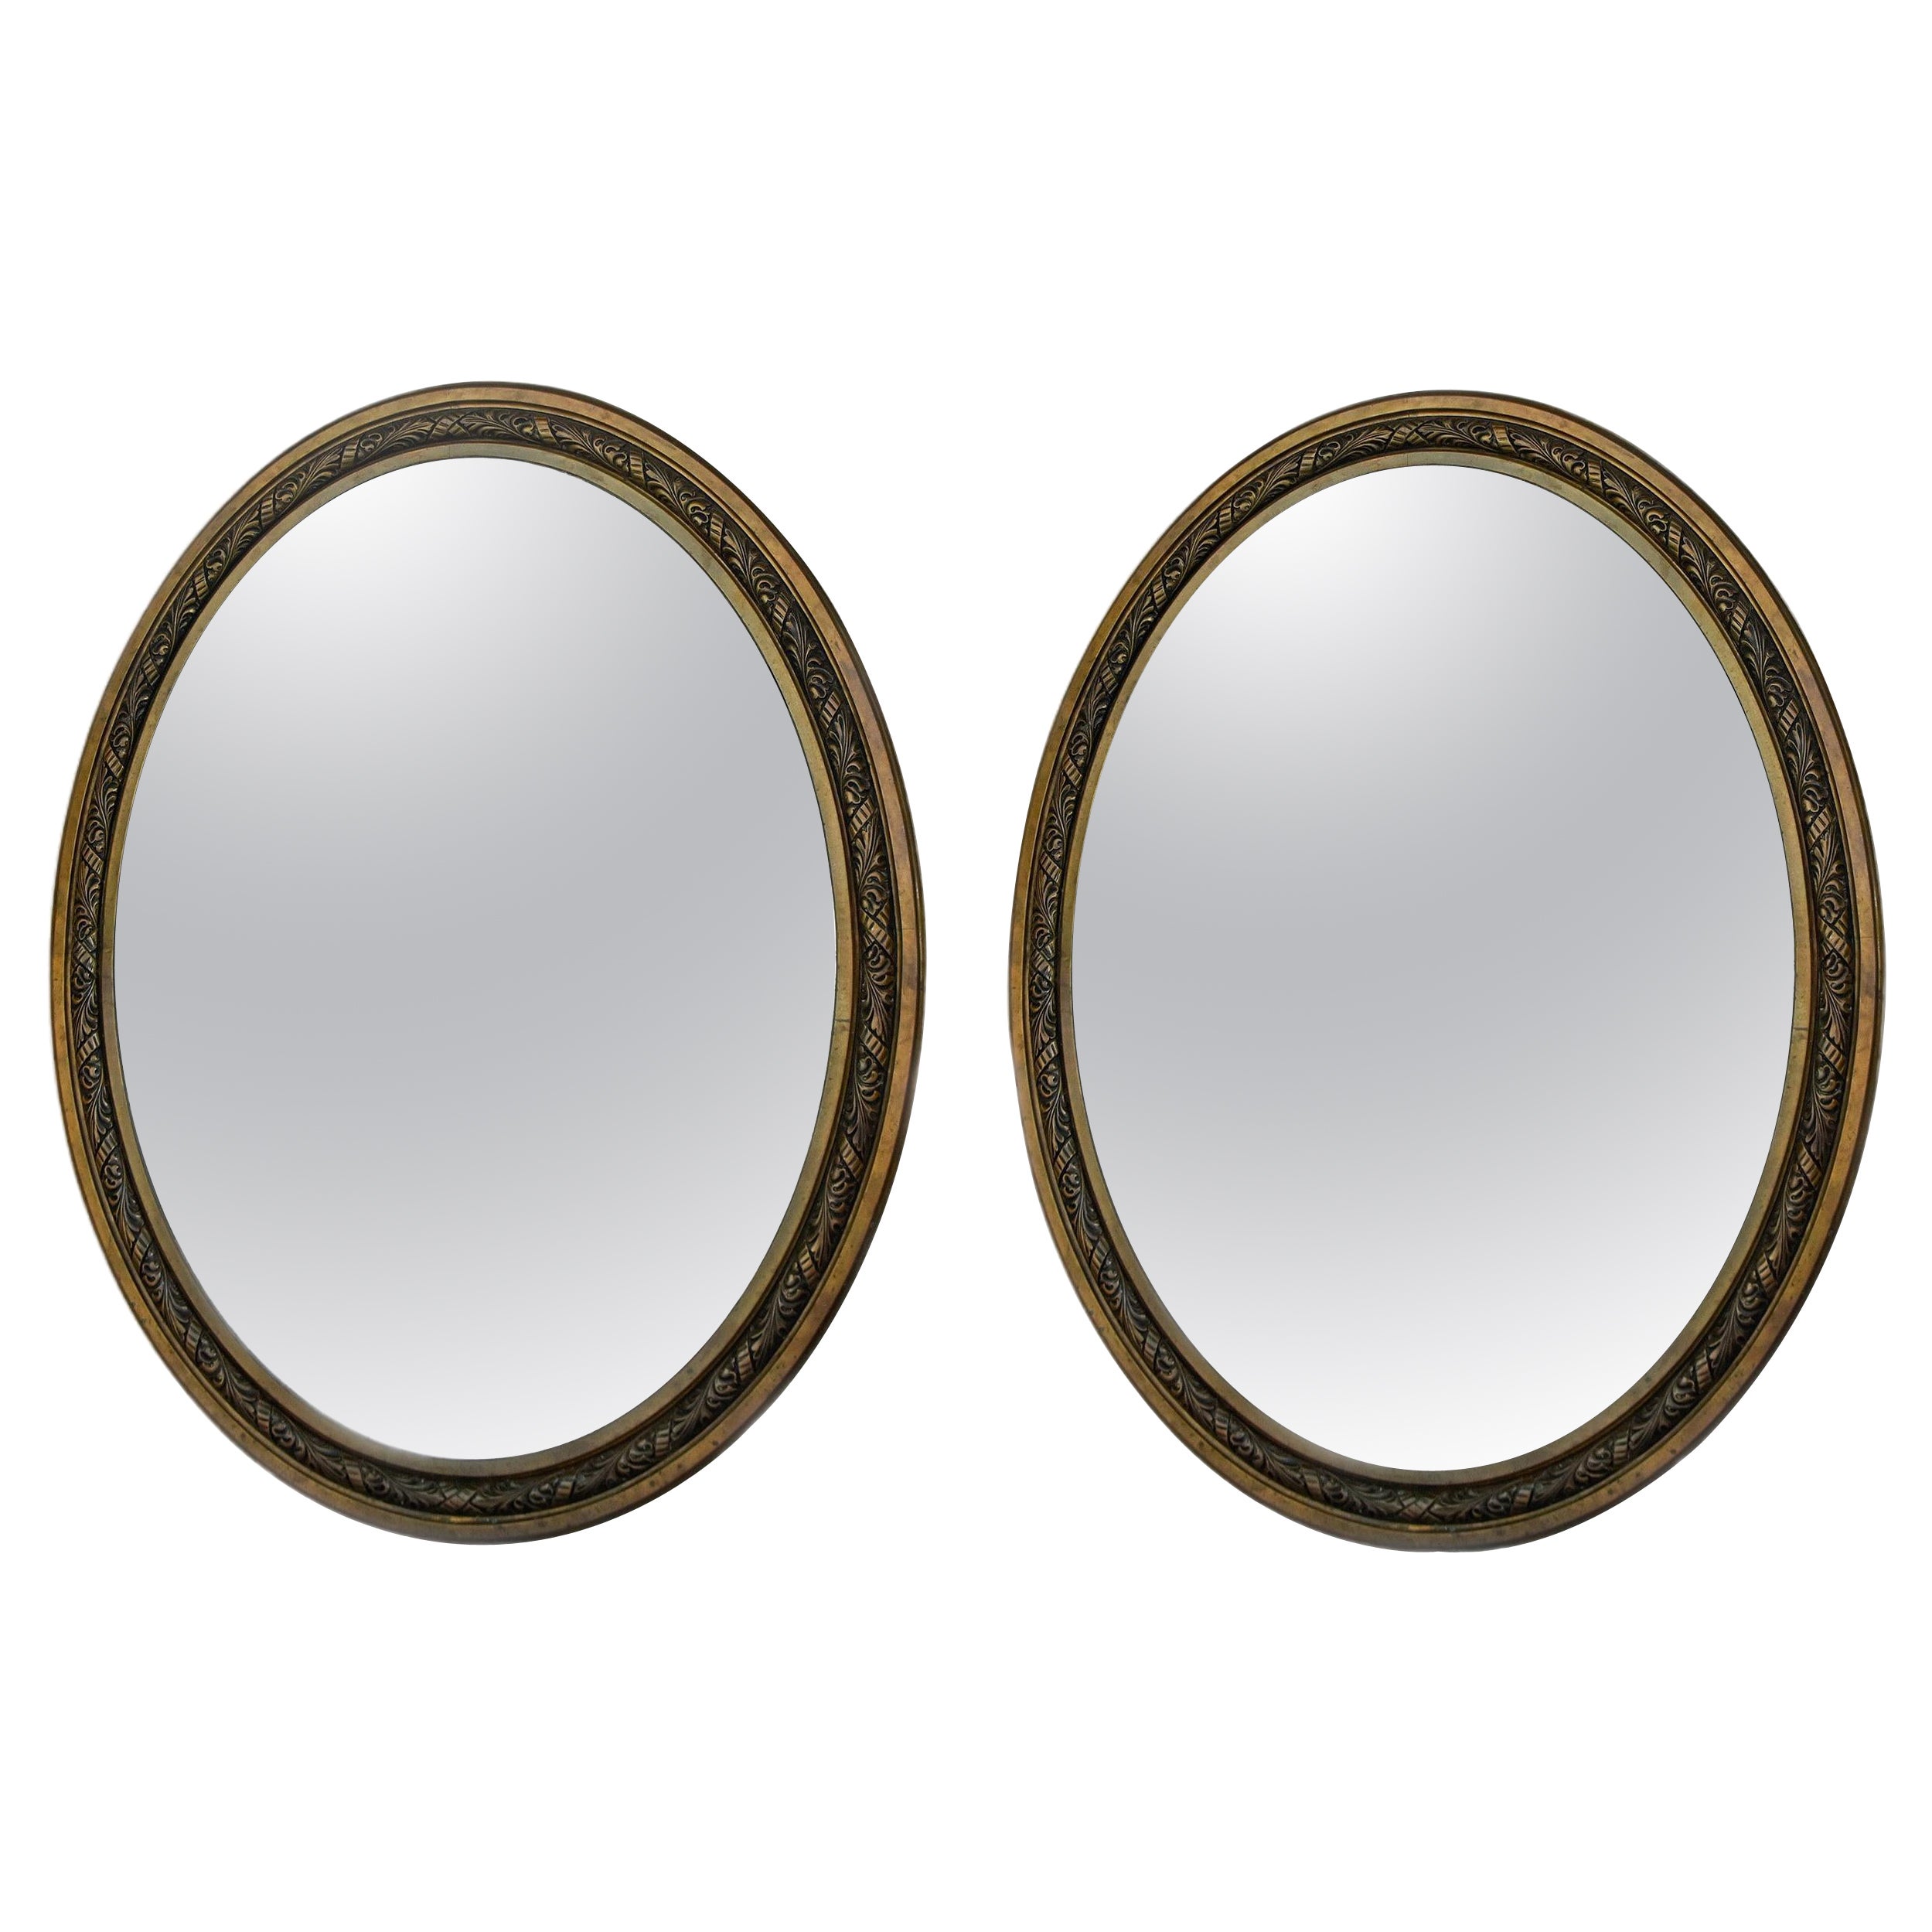 Paire de grands miroirs en bronze à cadre ovale et bords biseautés du début du 20e siècle. 